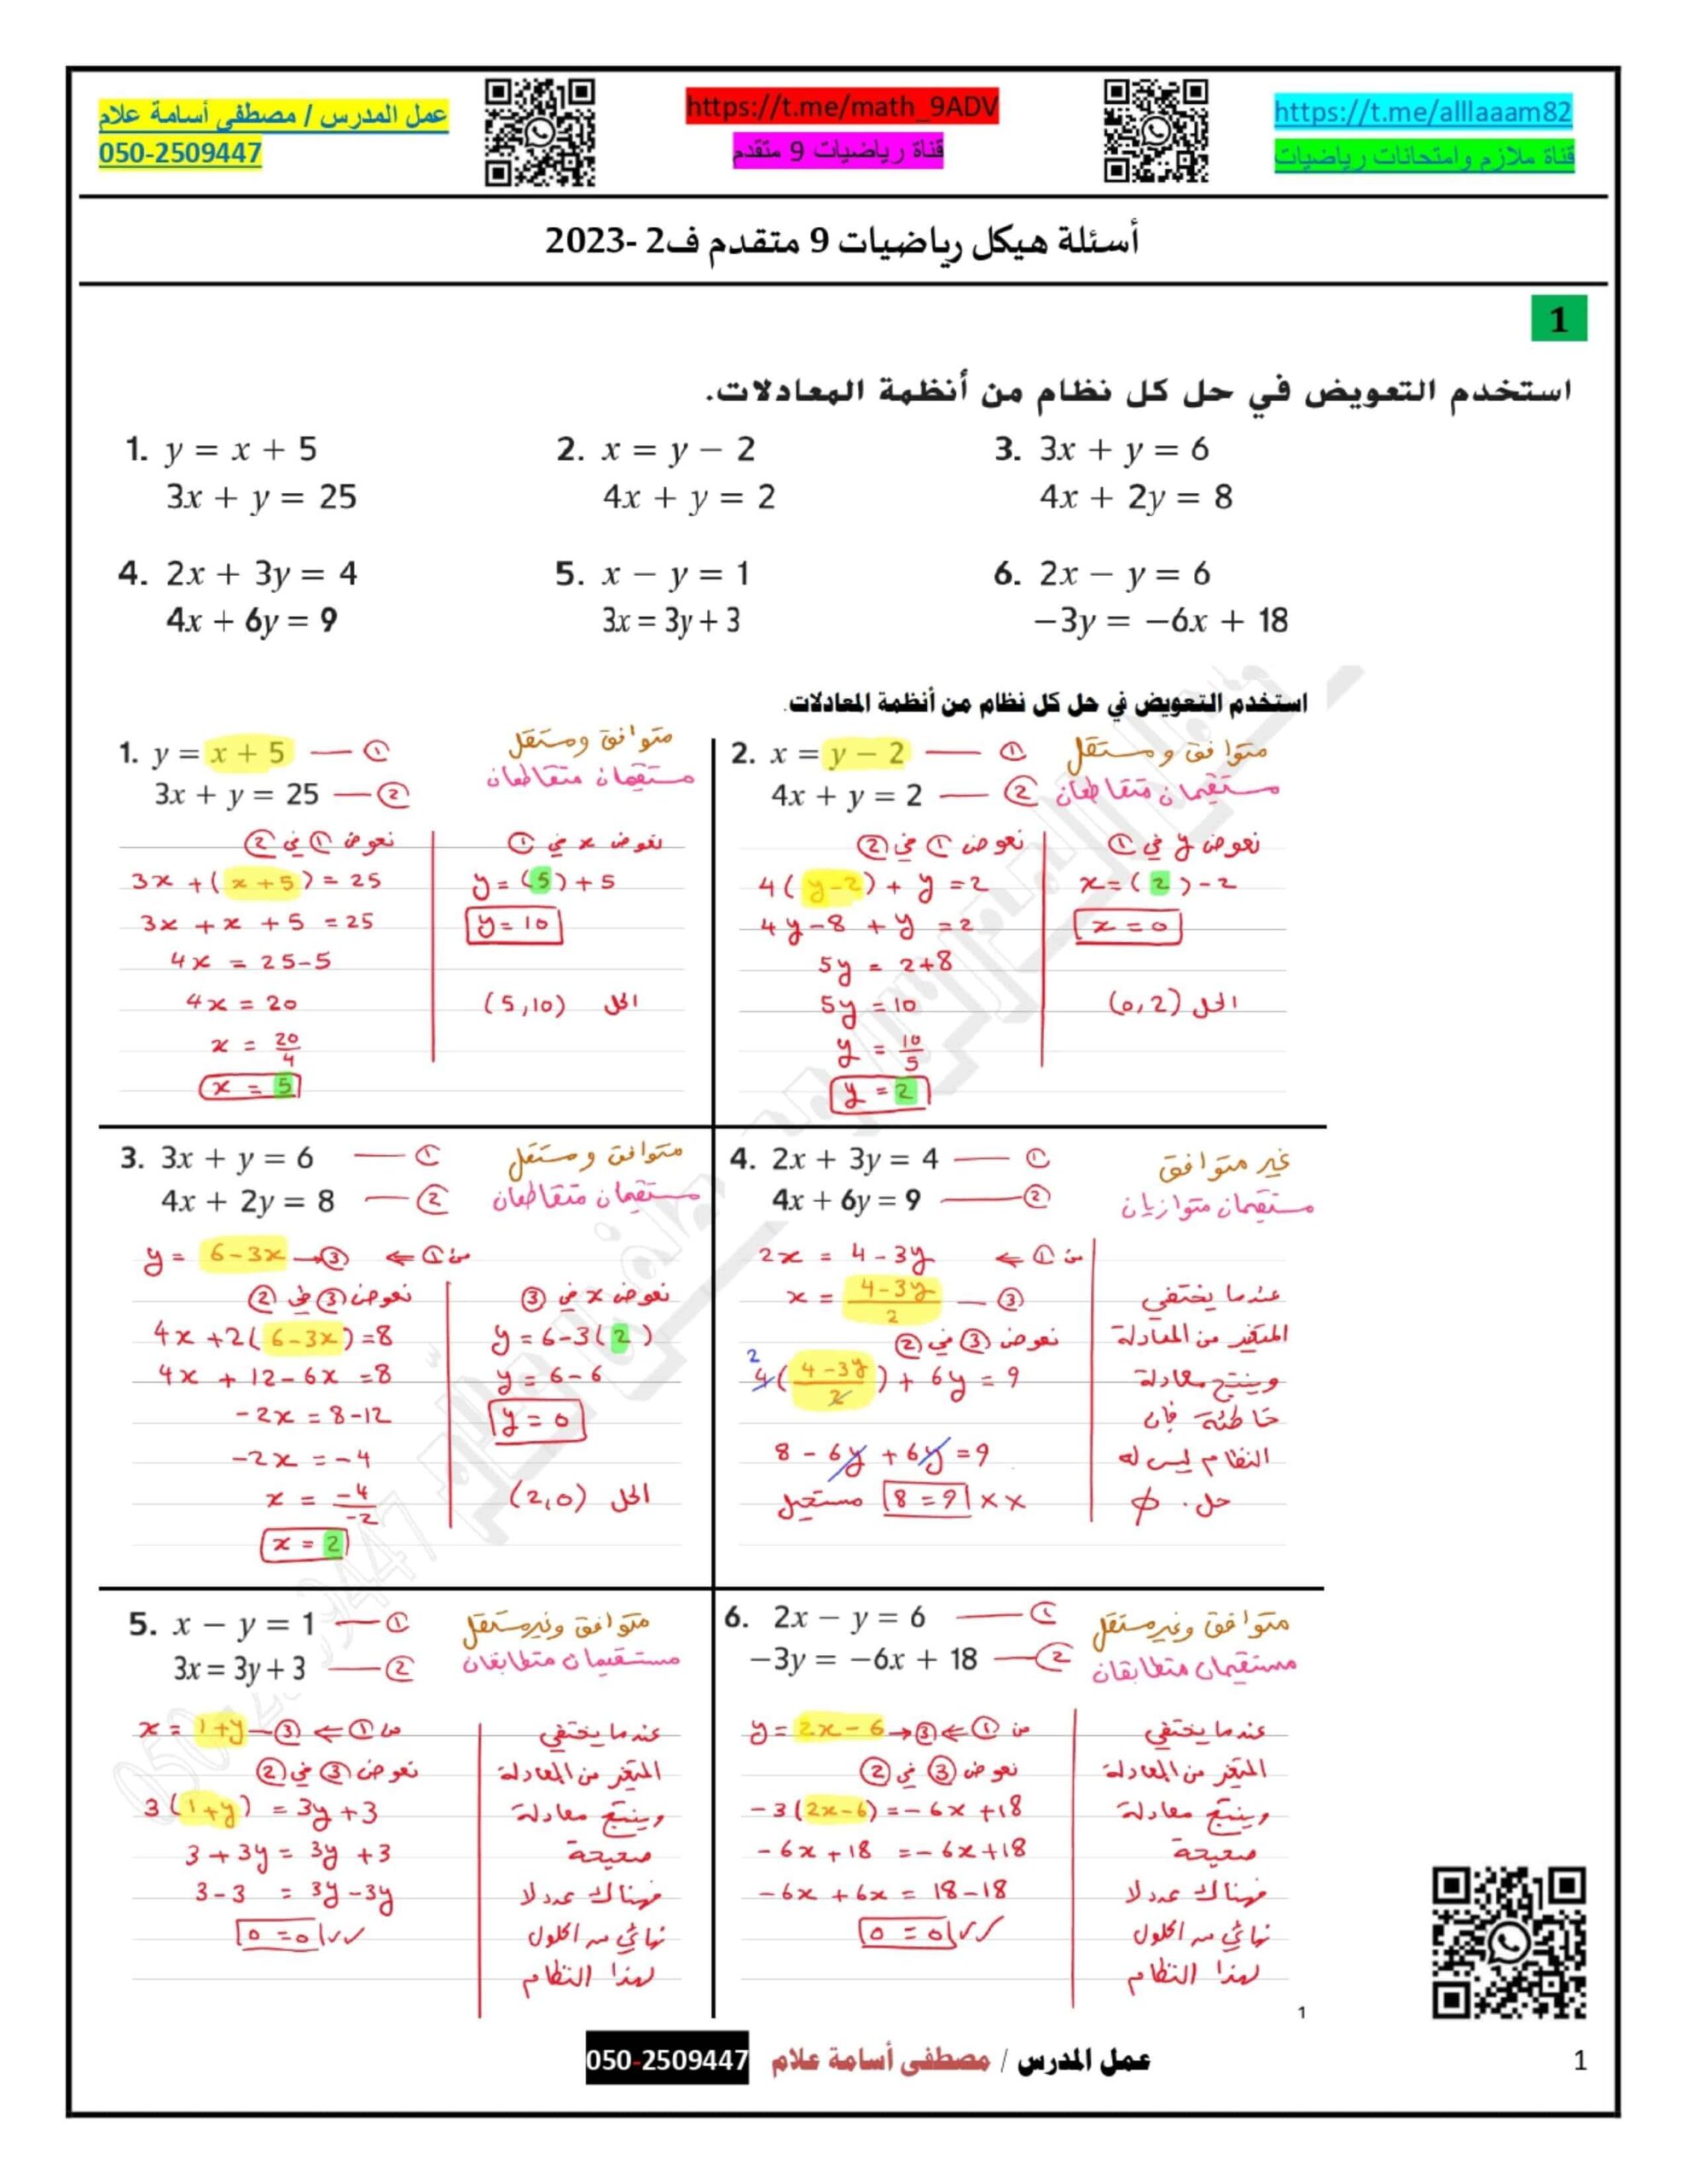 حل أسئلة هيكلة امتحان الرياضيات المتكاملة الصف التاسع متقدم 